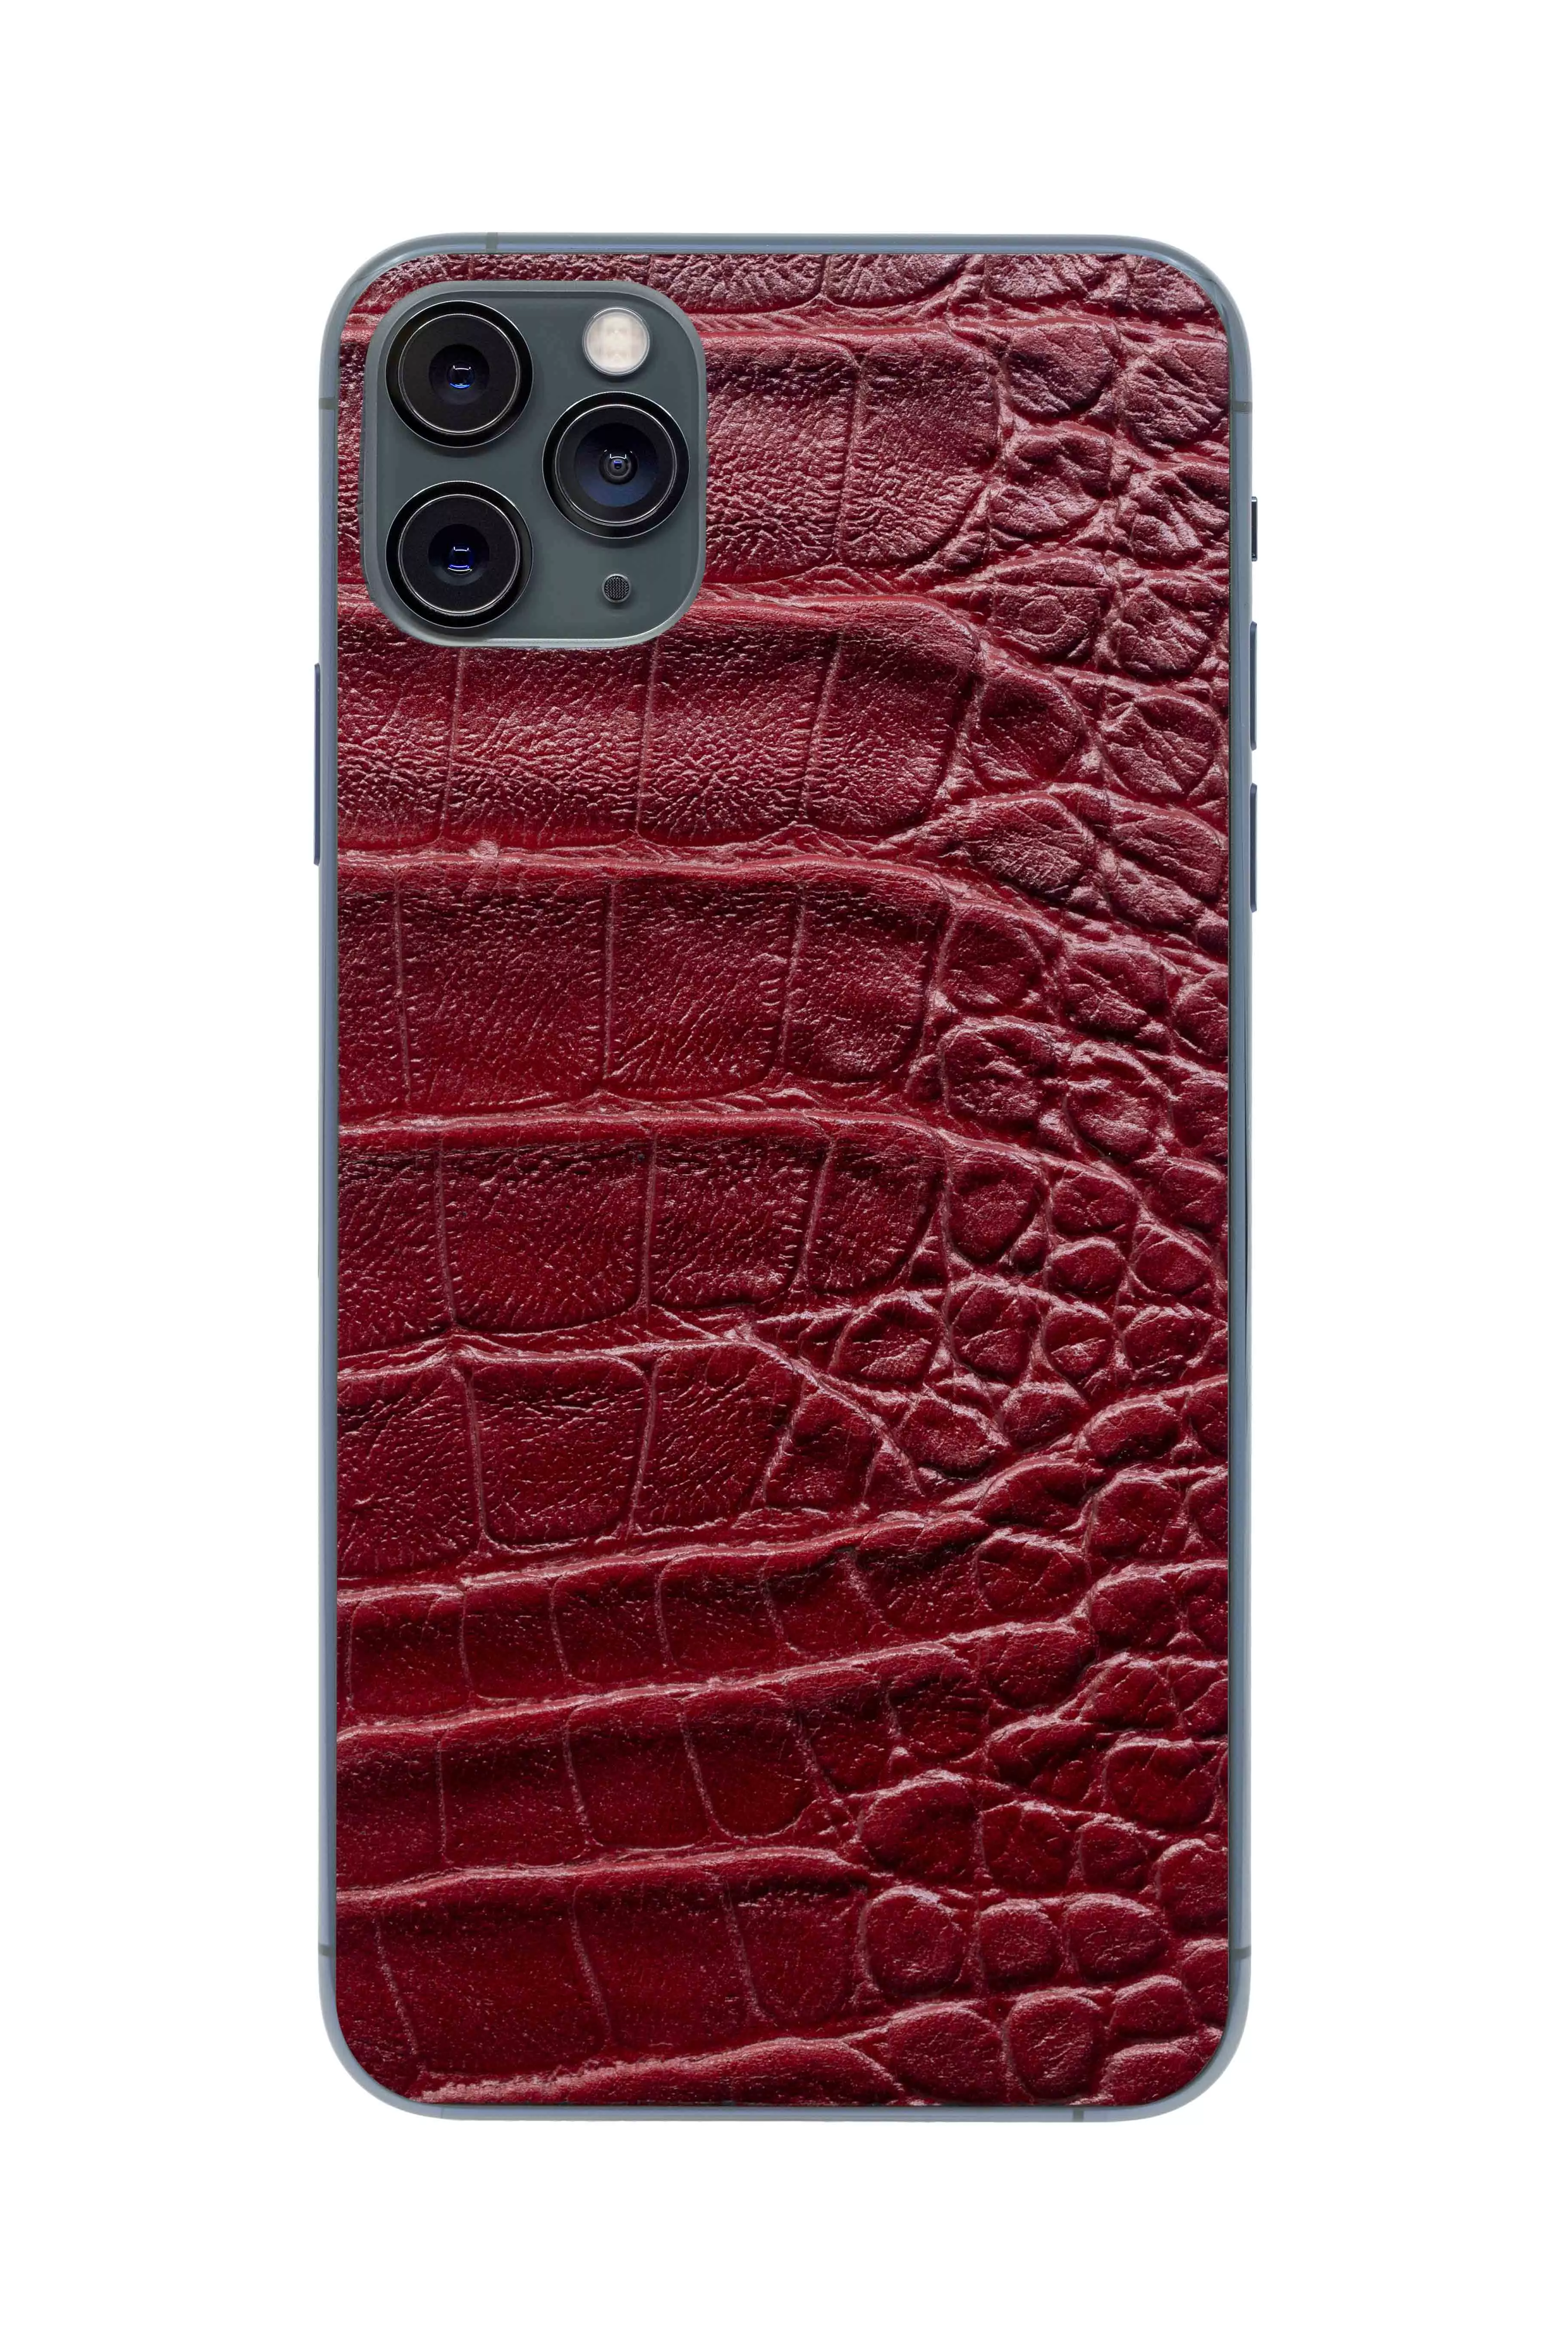 Защитная наклейка из натуральной кожи для iPhone 11 Pro Max, Вид Красный 2. Вид 1